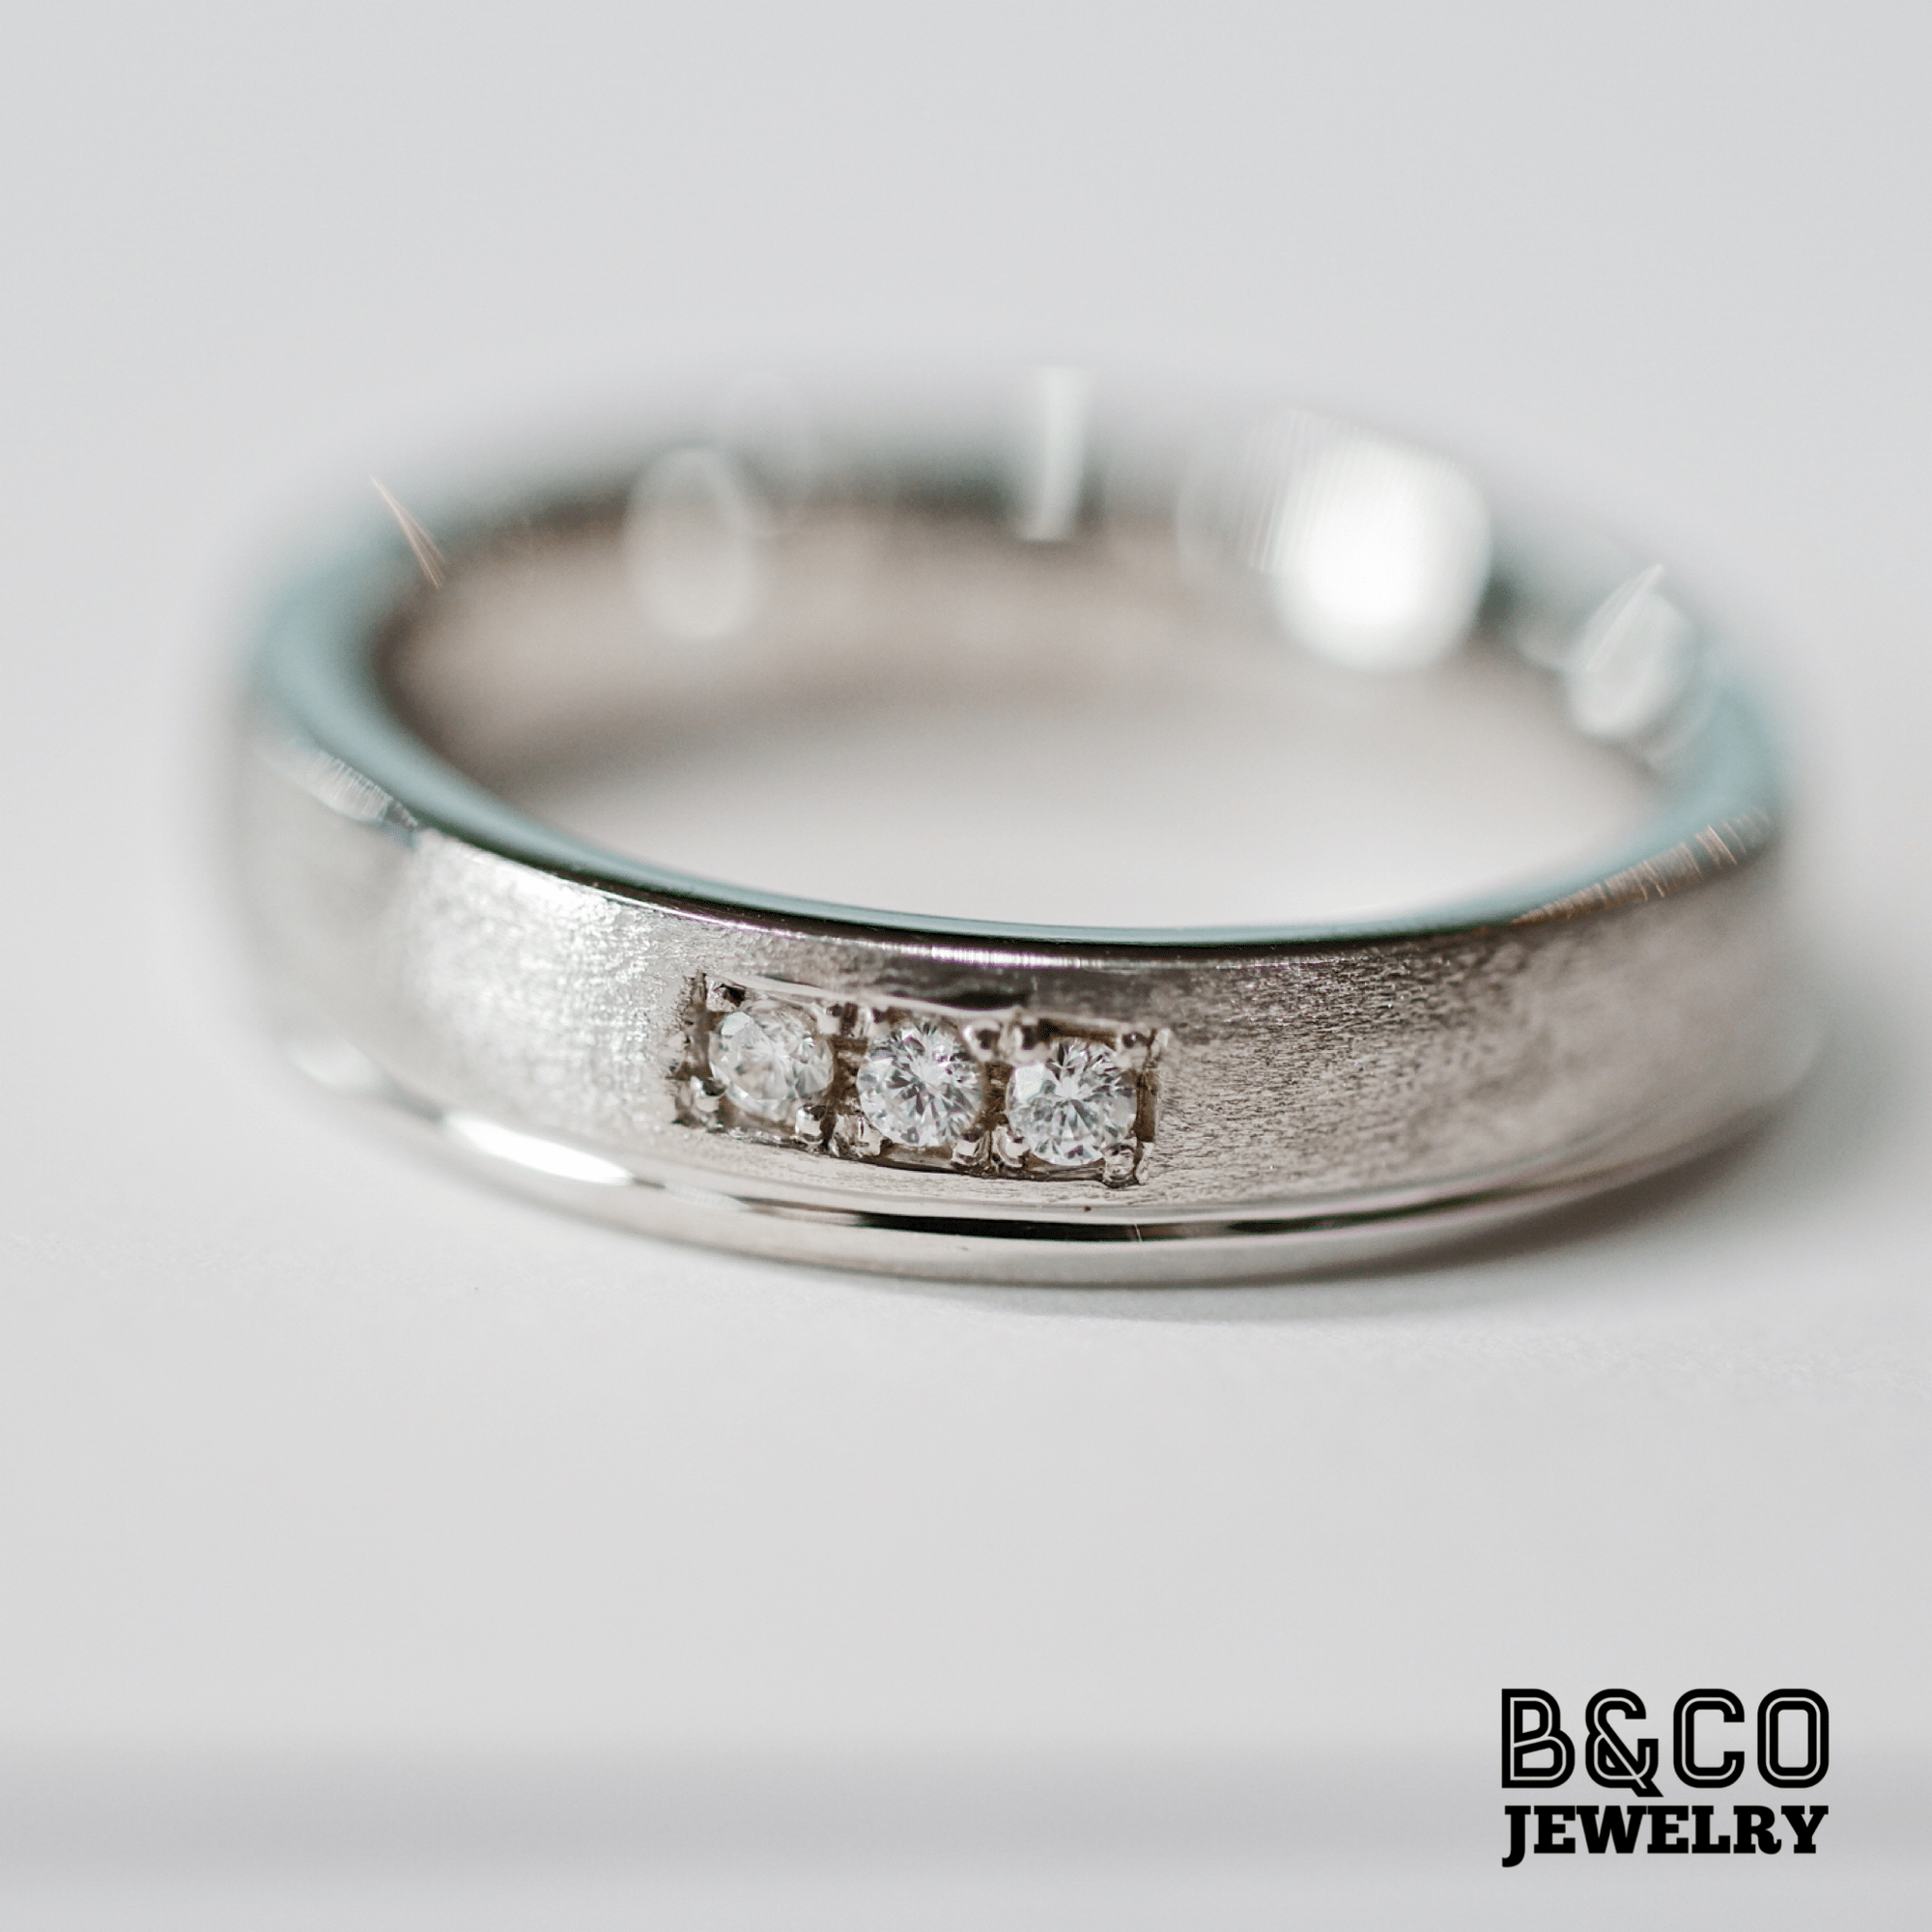 Bosnia Wedding Rings – B&Co Jewelry